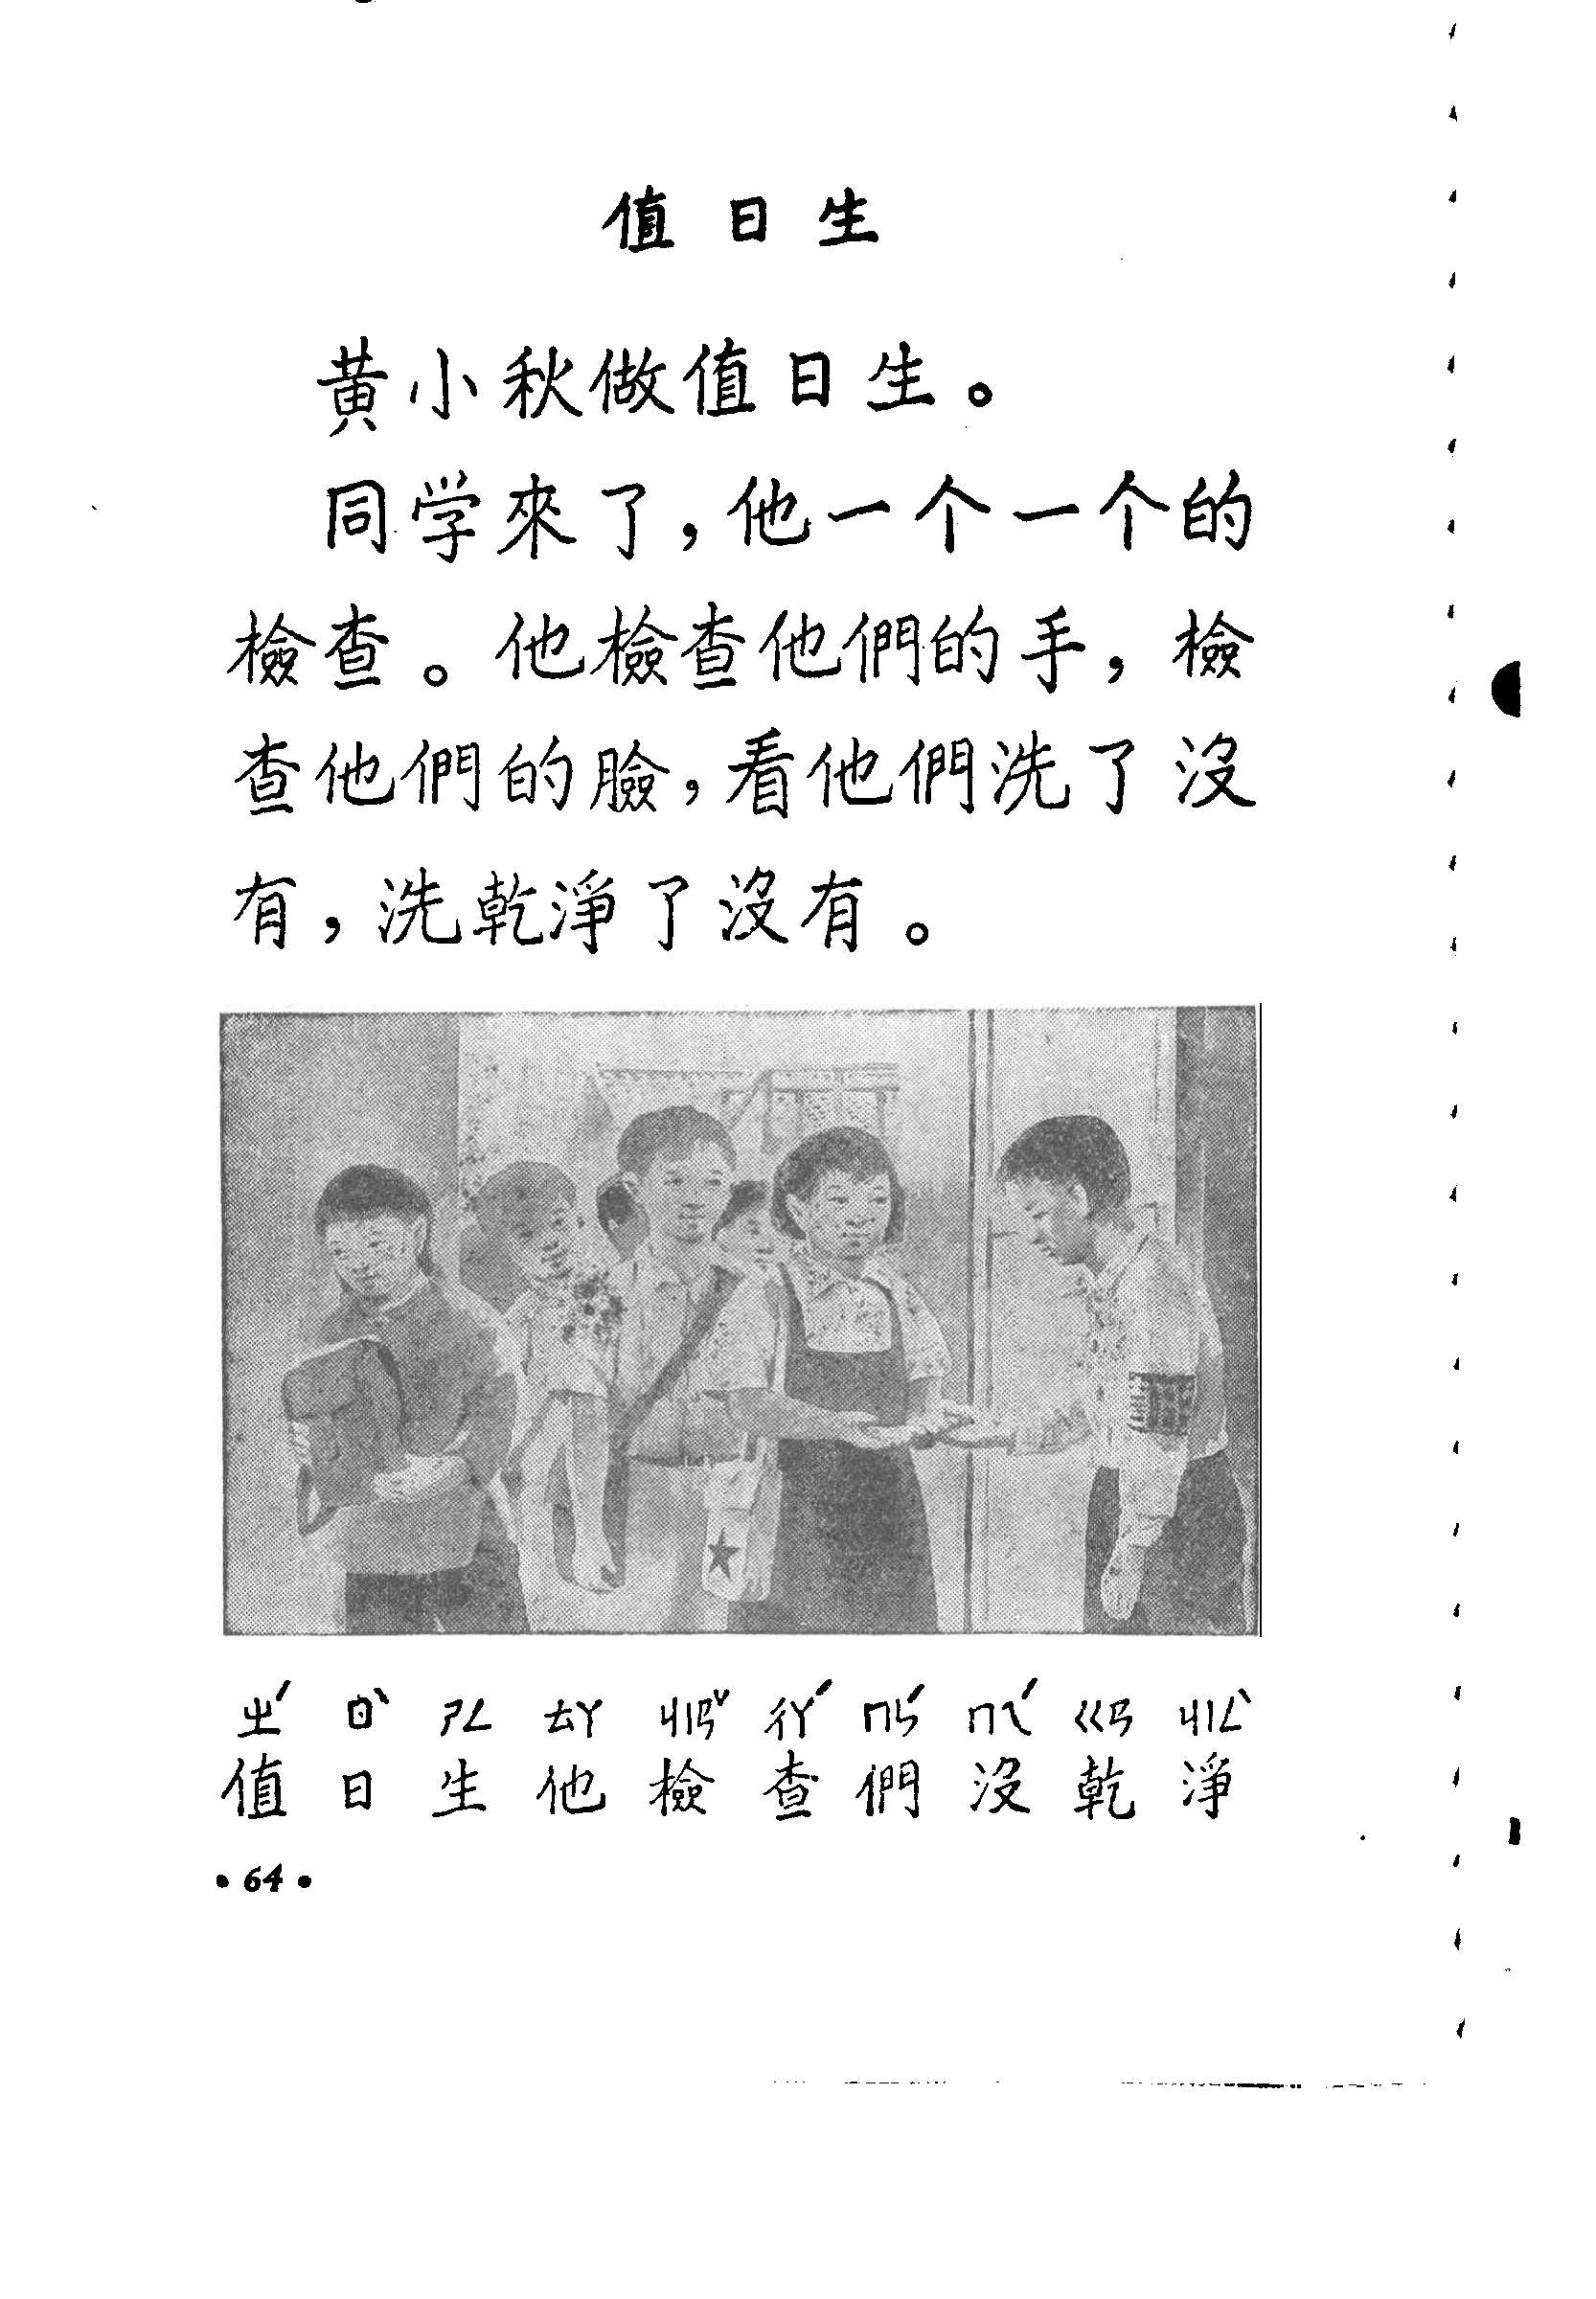 老课本：《初级小学课本-语文》1955年版